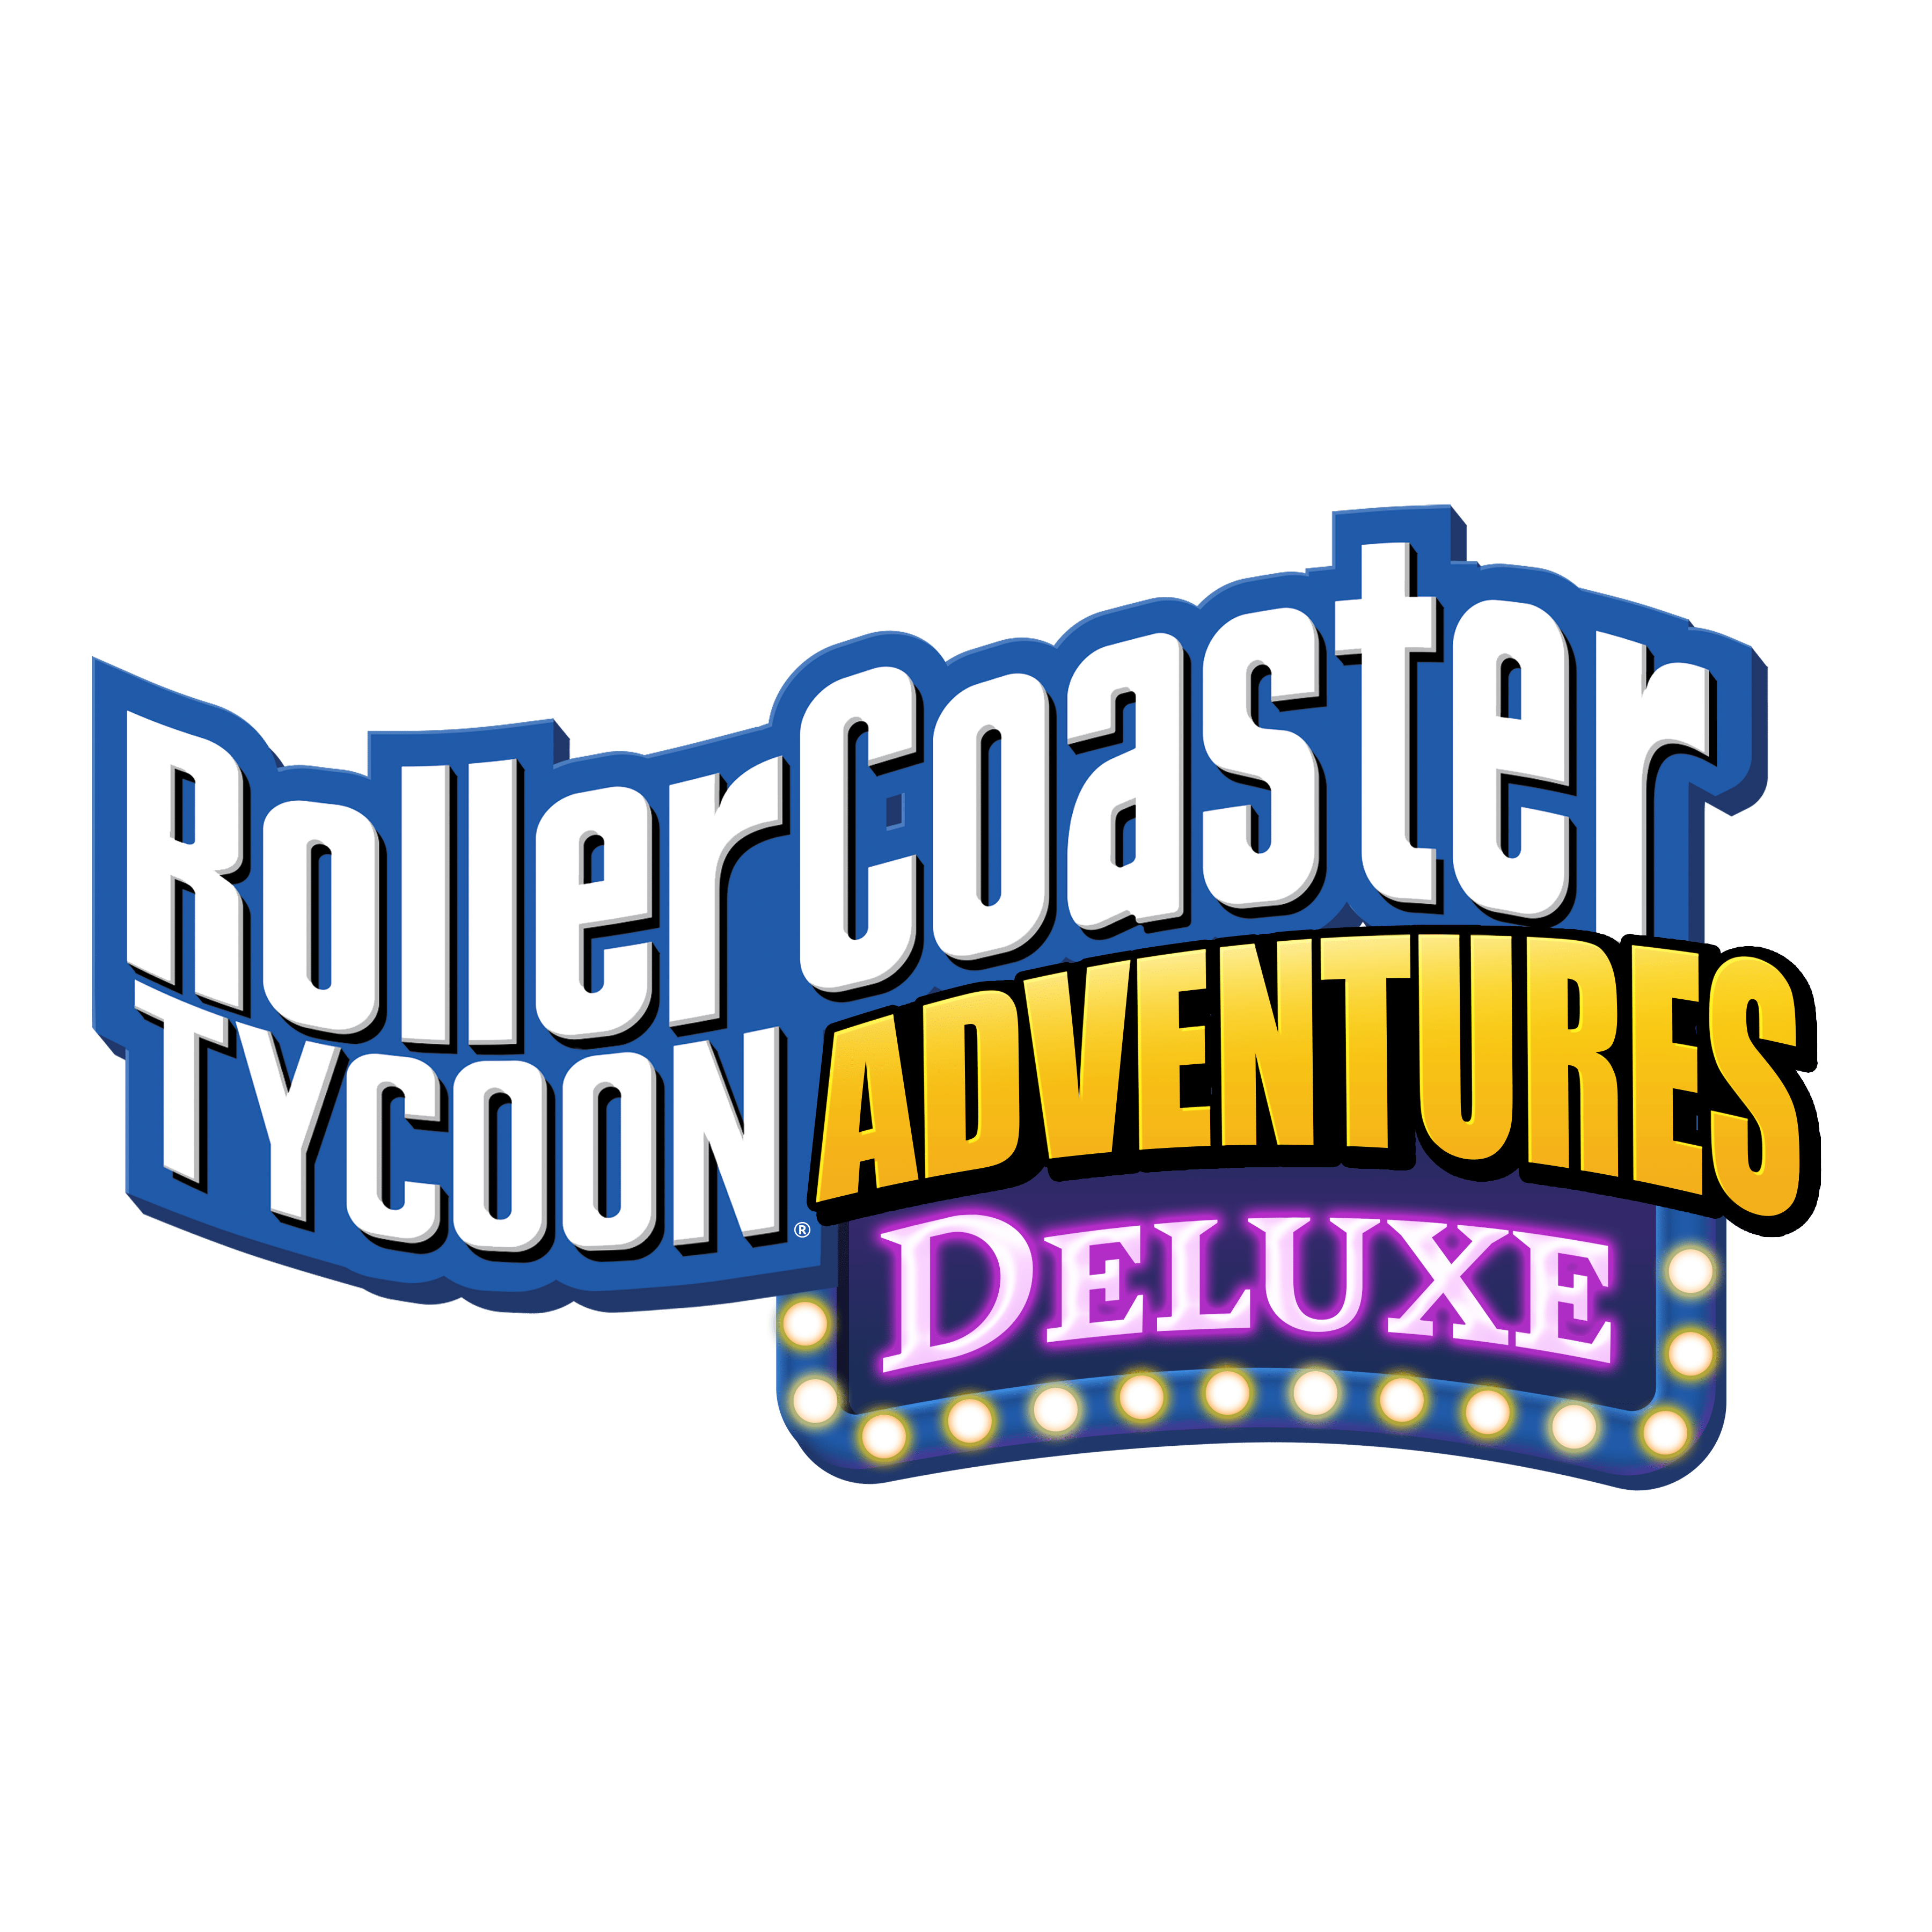 RollerCoaster Tycoon Adventures Deluxe: Release Date Trailer 